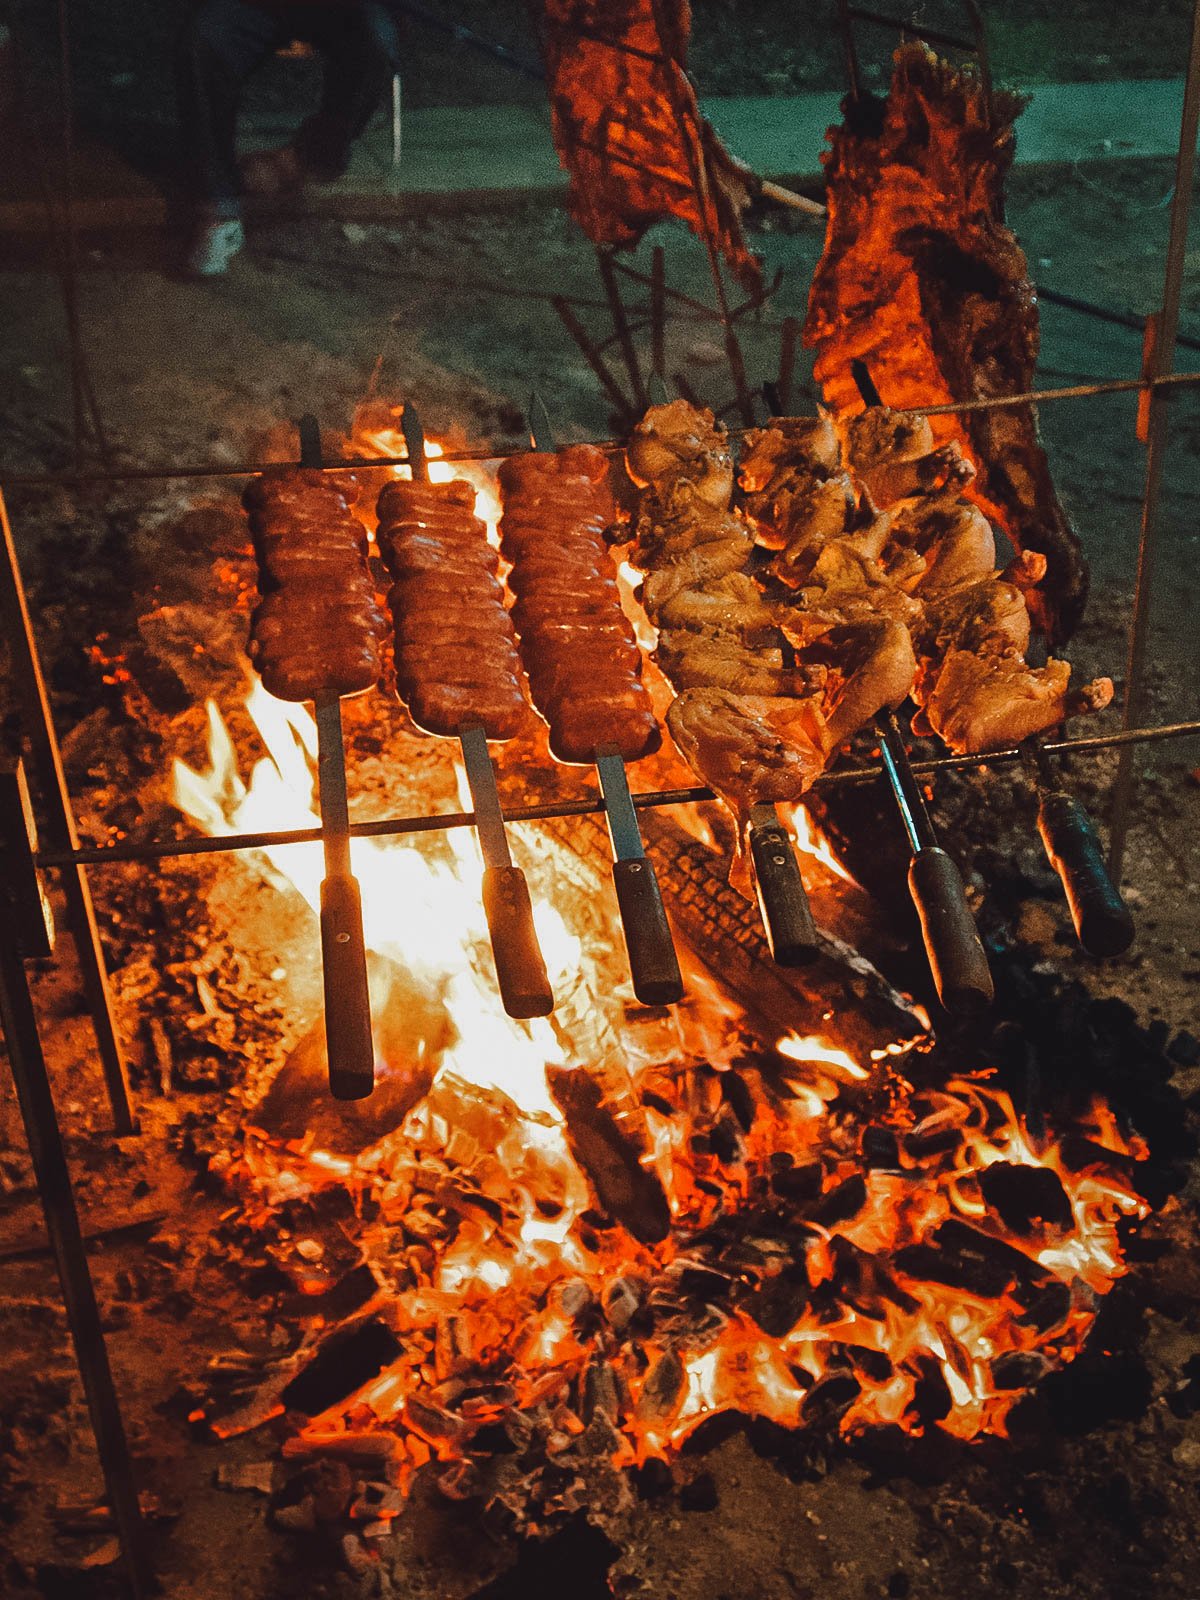 Churrasco carni grigliate sul fuoco,una delle più deliziose tradizioni brasiliane